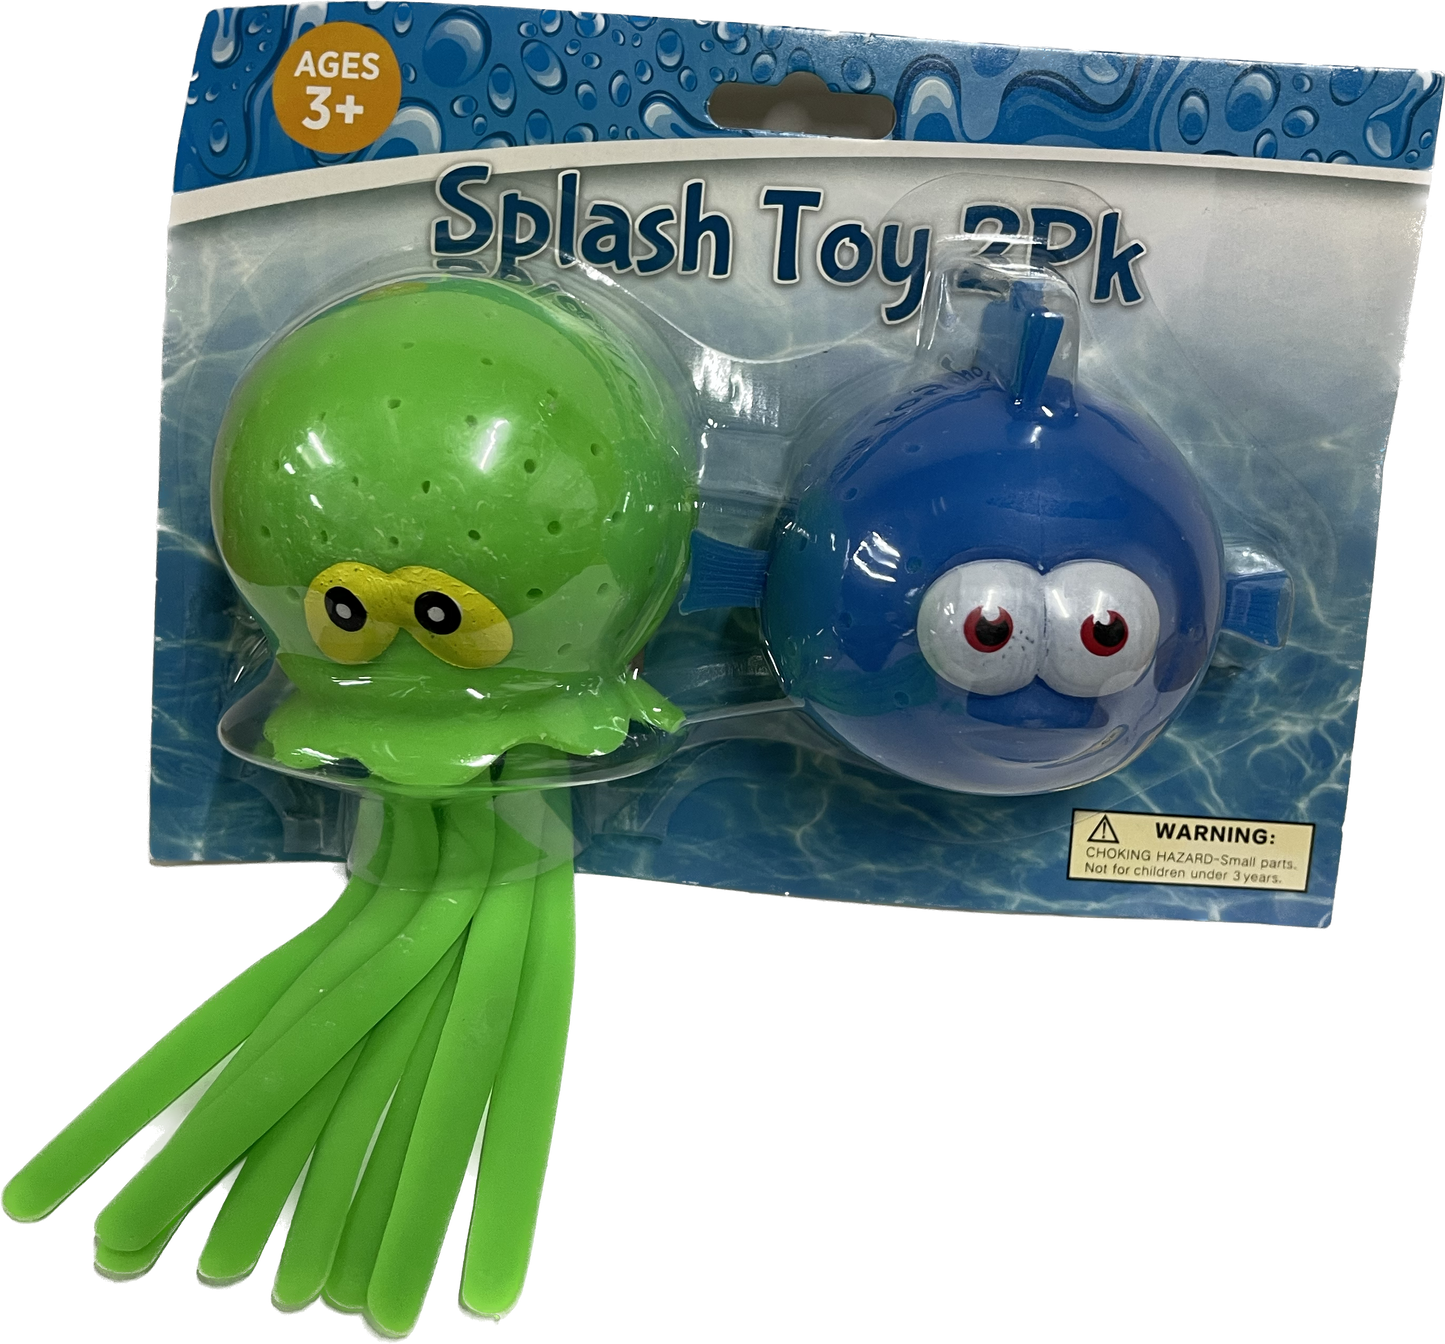 Splash Toy 2 Pack